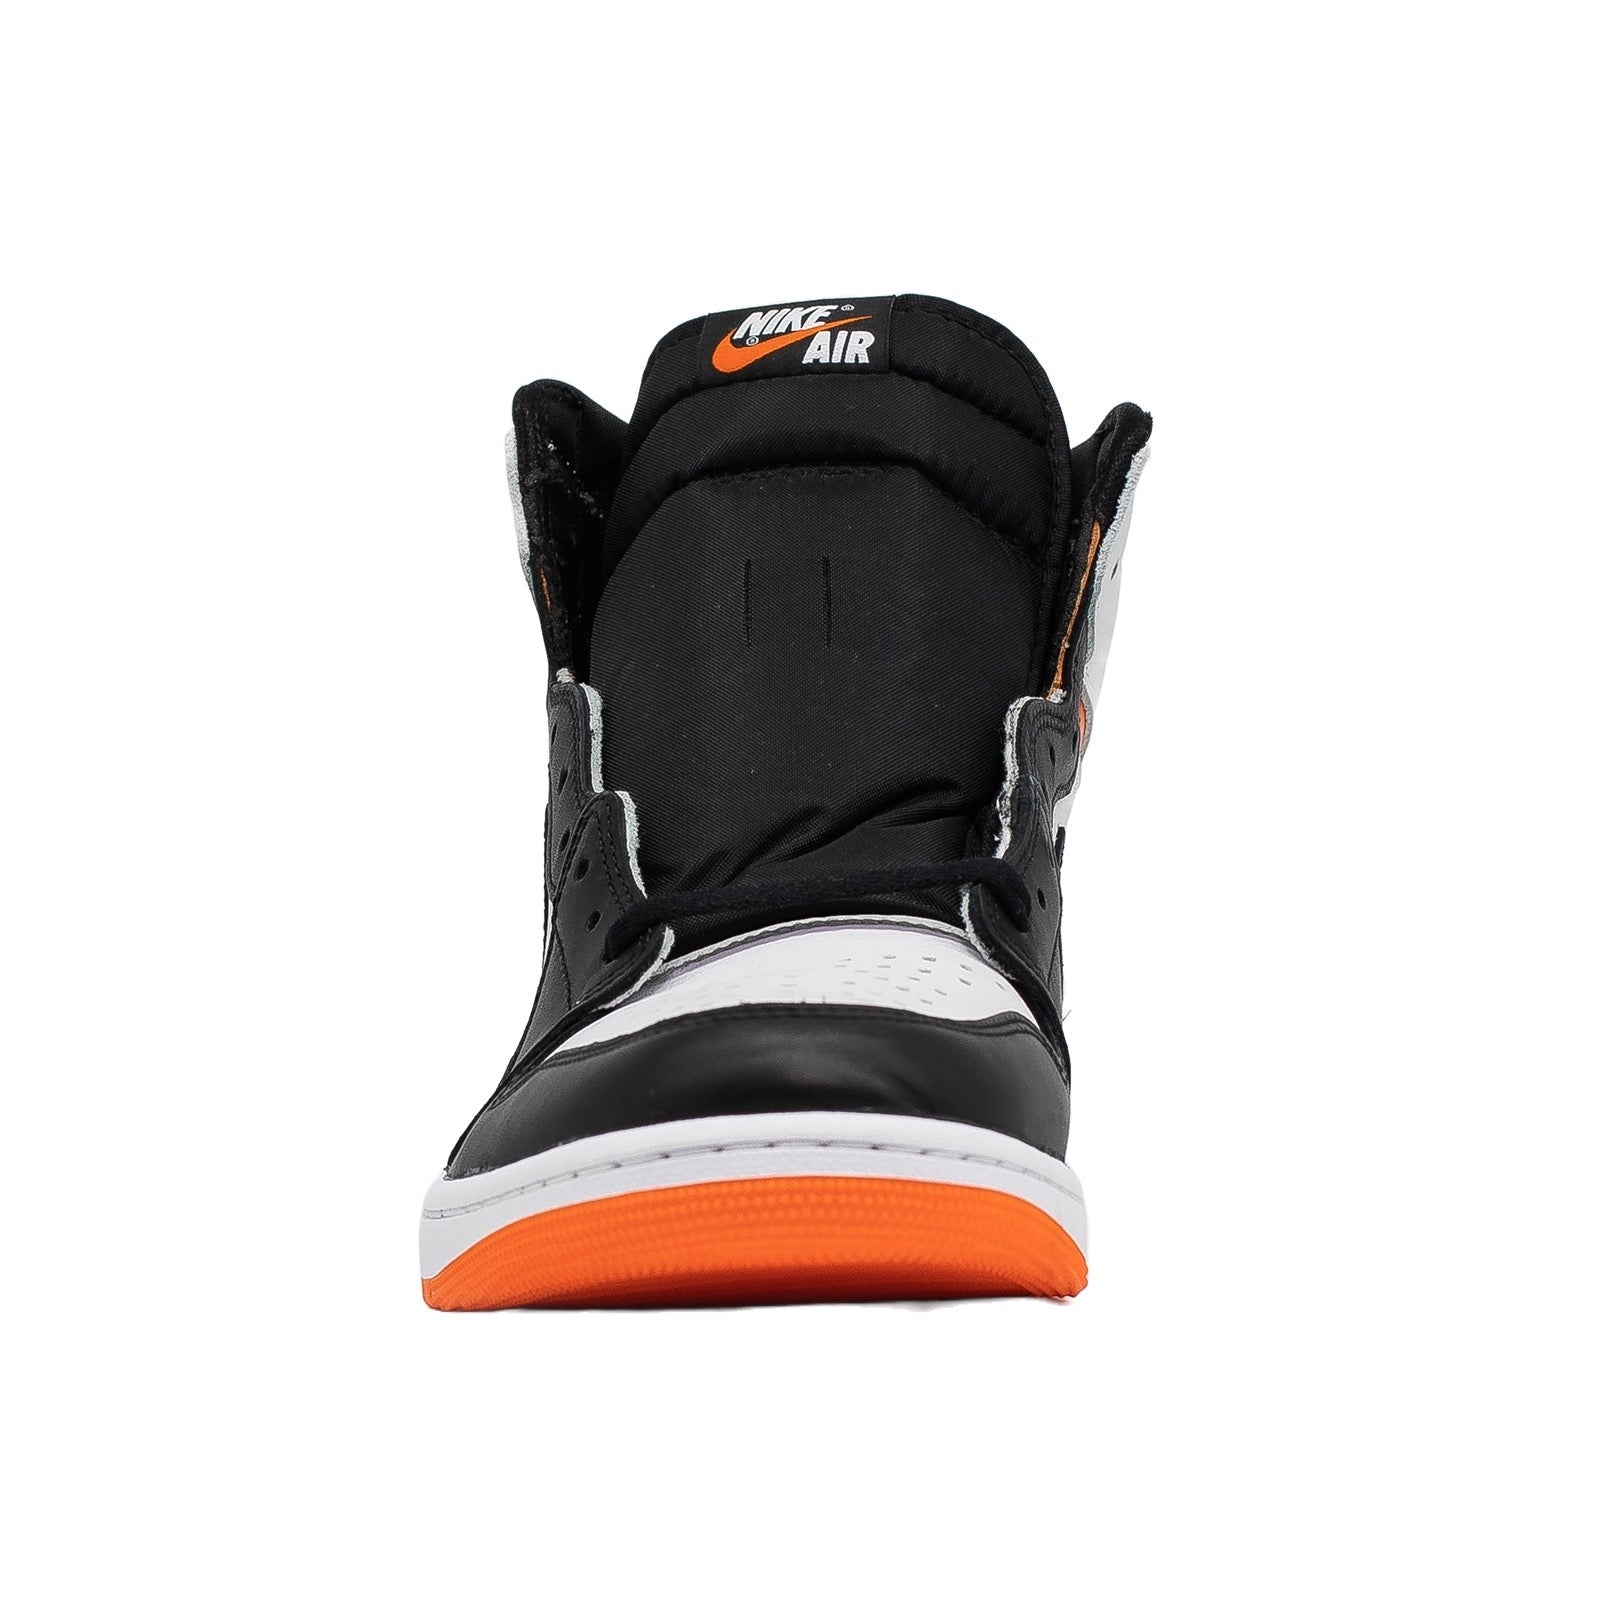 Air Olympic-inspired Air Jordan, Electro Orange